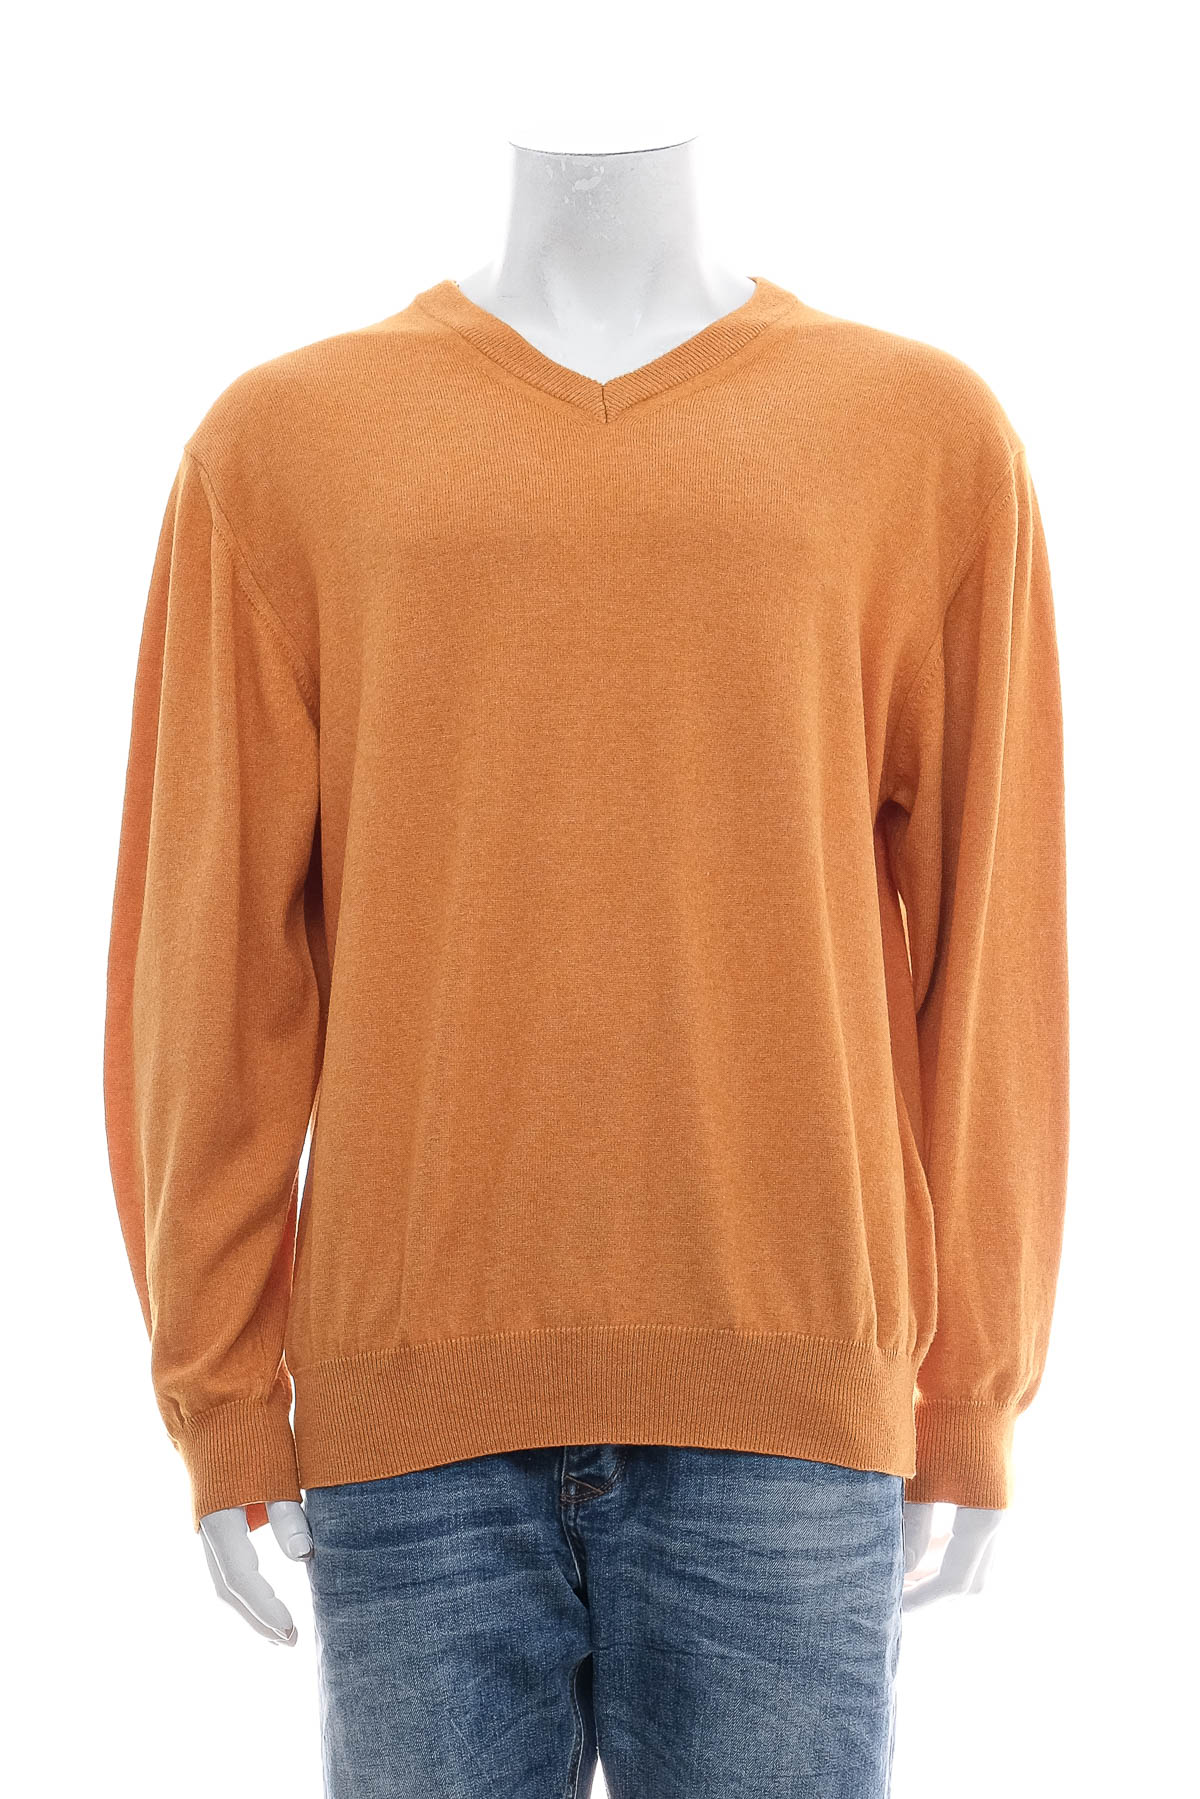 Men's sweater - K&L RUPPERT - 0